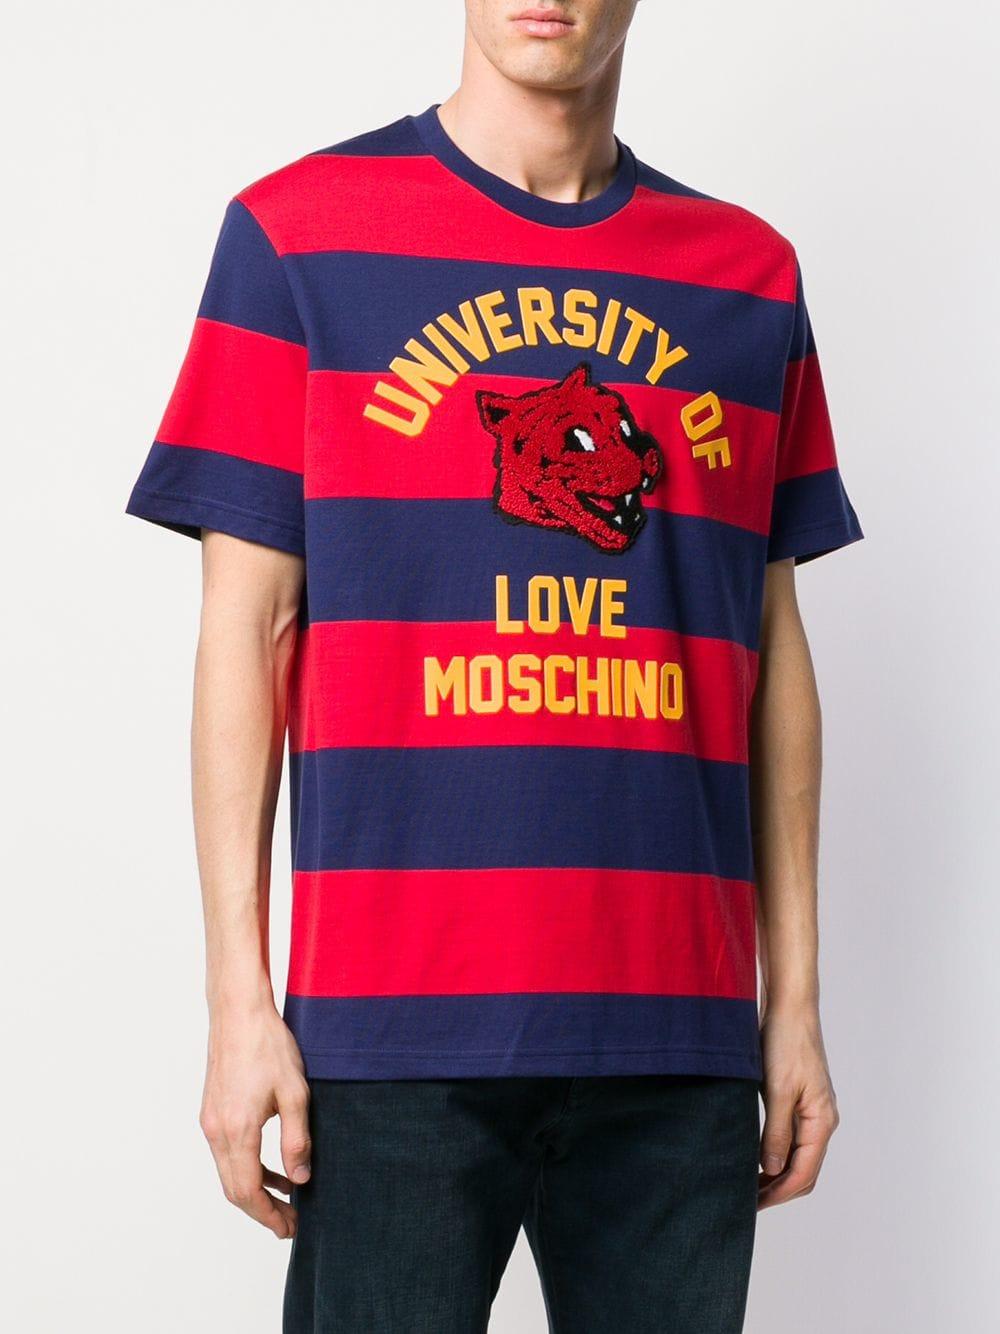 moschino shirt red